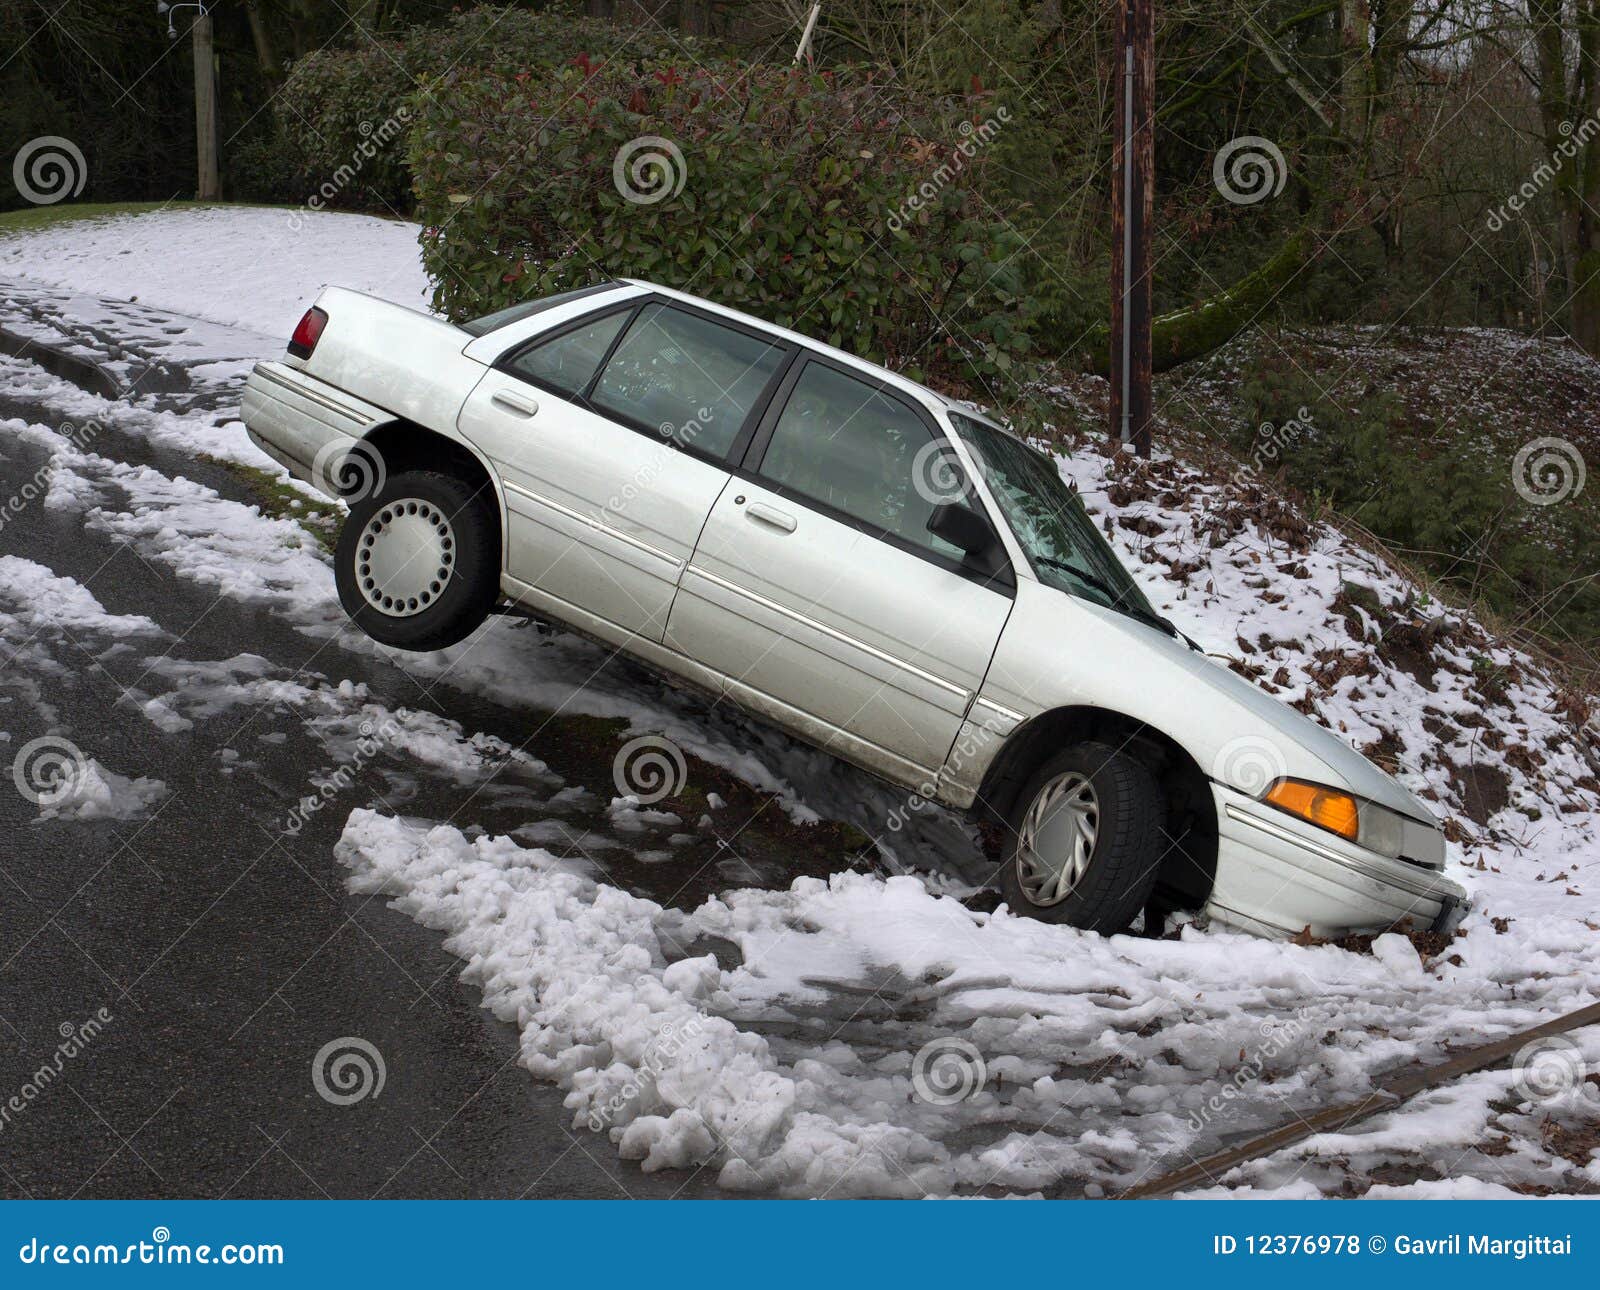 car in the ditch